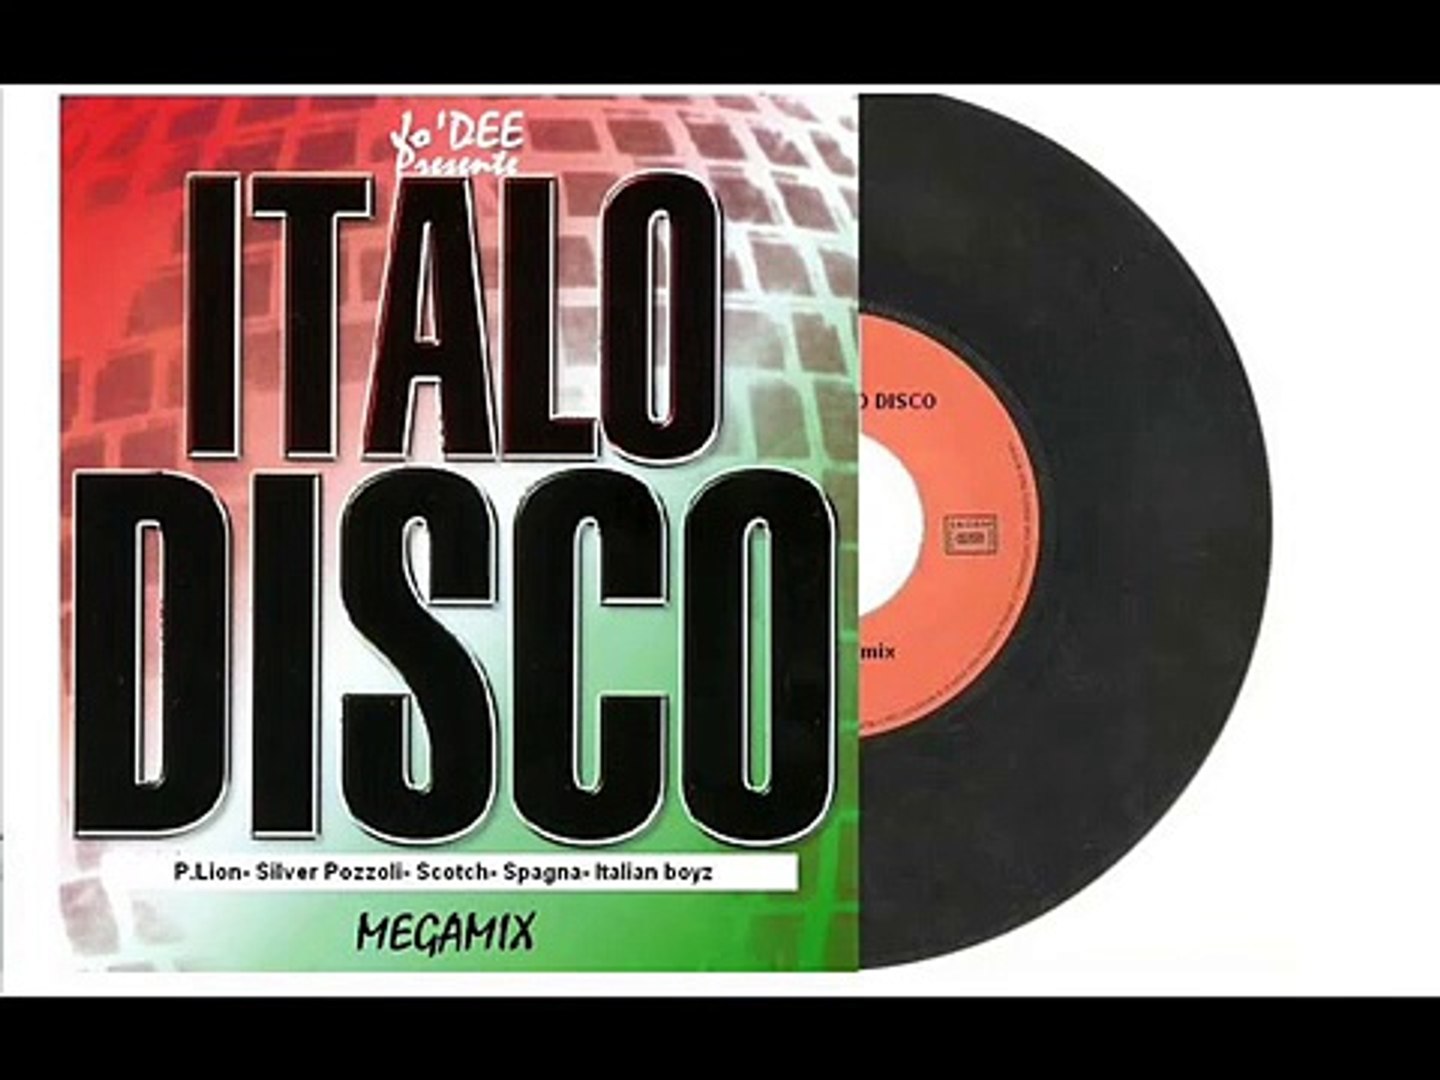 Италия 80 музыка. Итало диско мегамикс 80. Итальянское диско 80-х. Italian Disco 80. Scotch Disco Band клип.